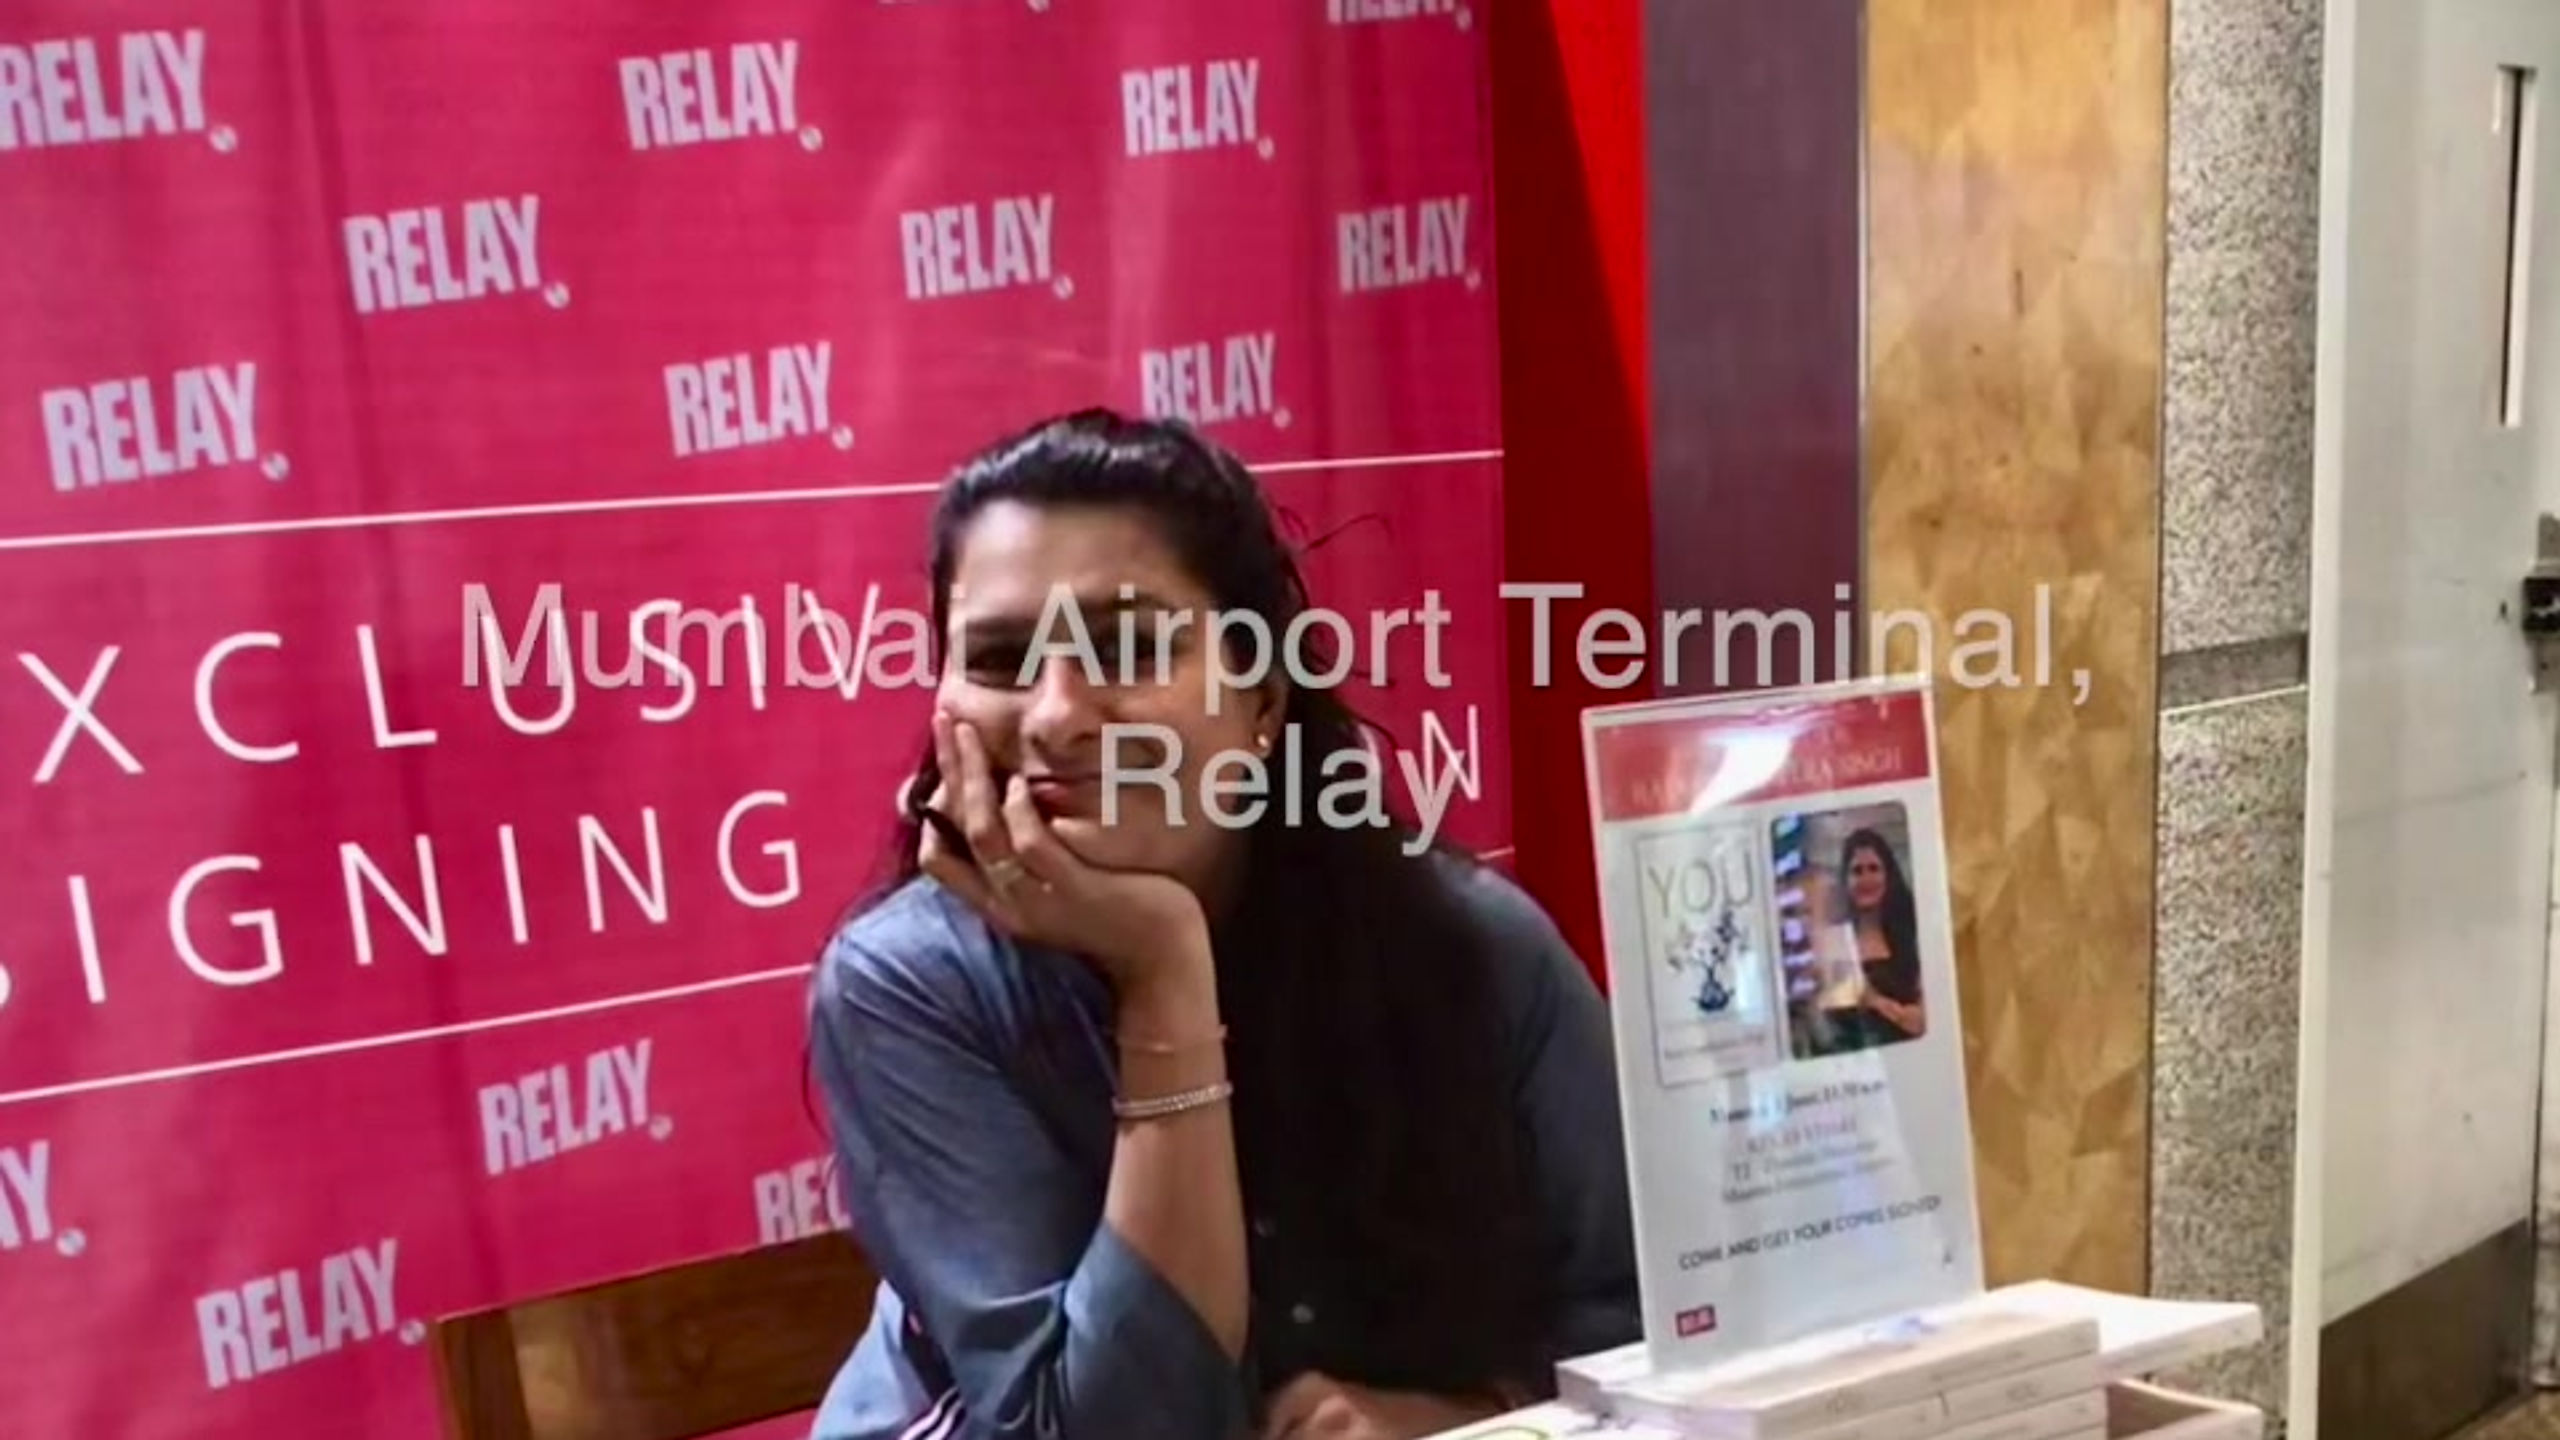 Book Signing - Mumbai Airport Terminal